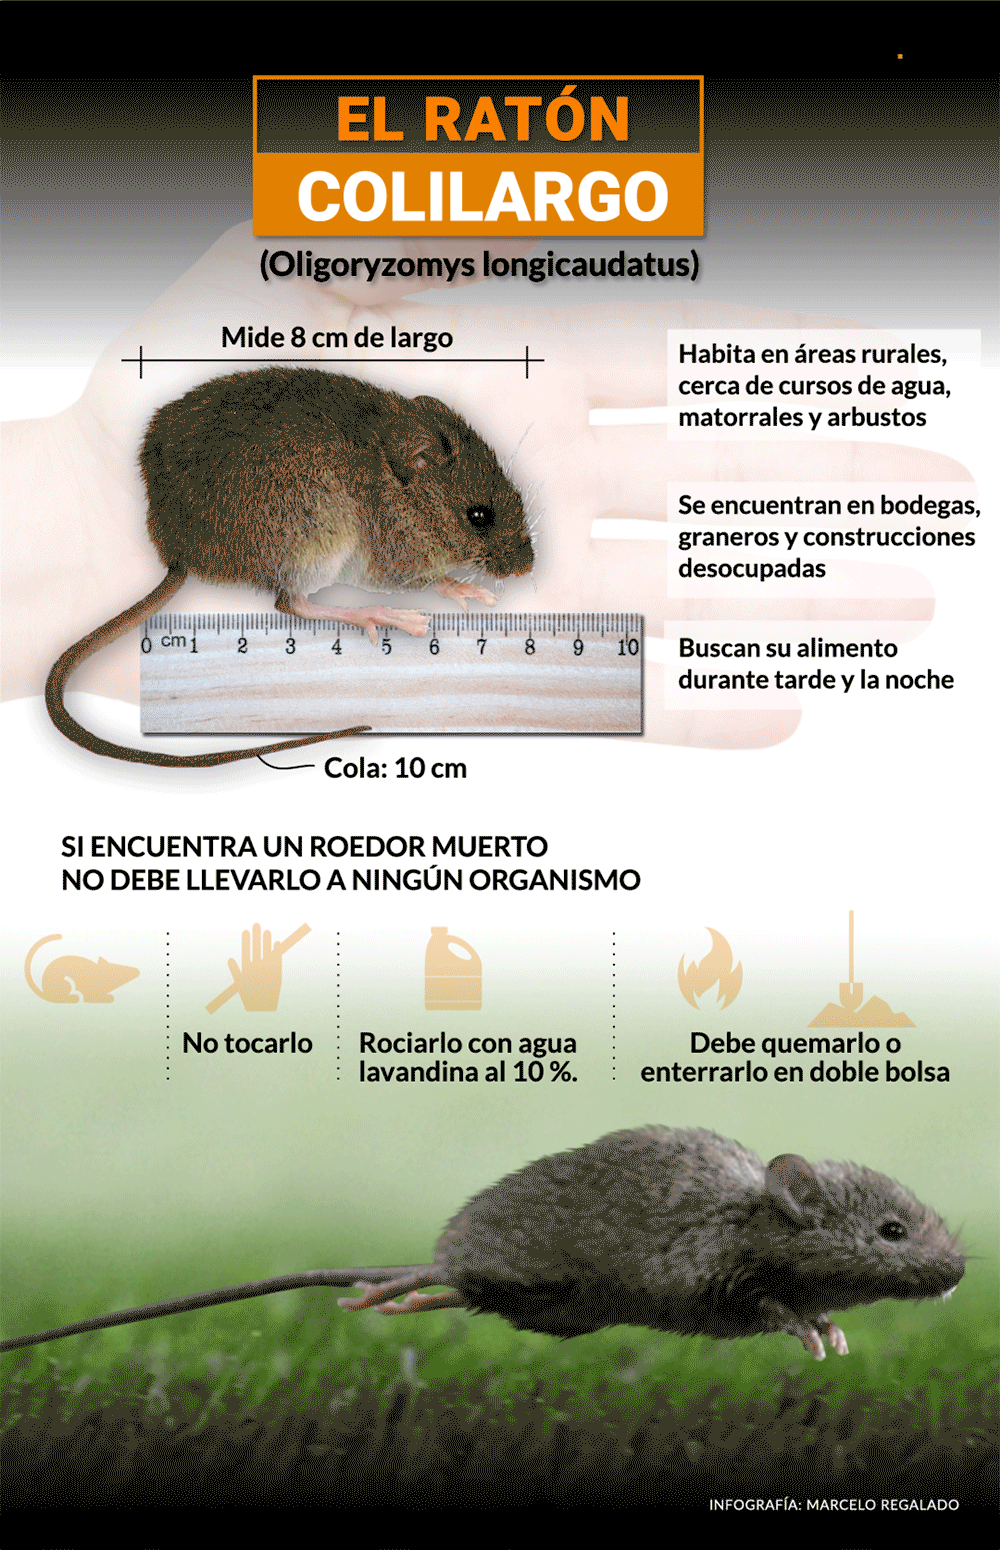 El ratón colilargo es una de las especies de roedores que puede transmitir la enfermedad